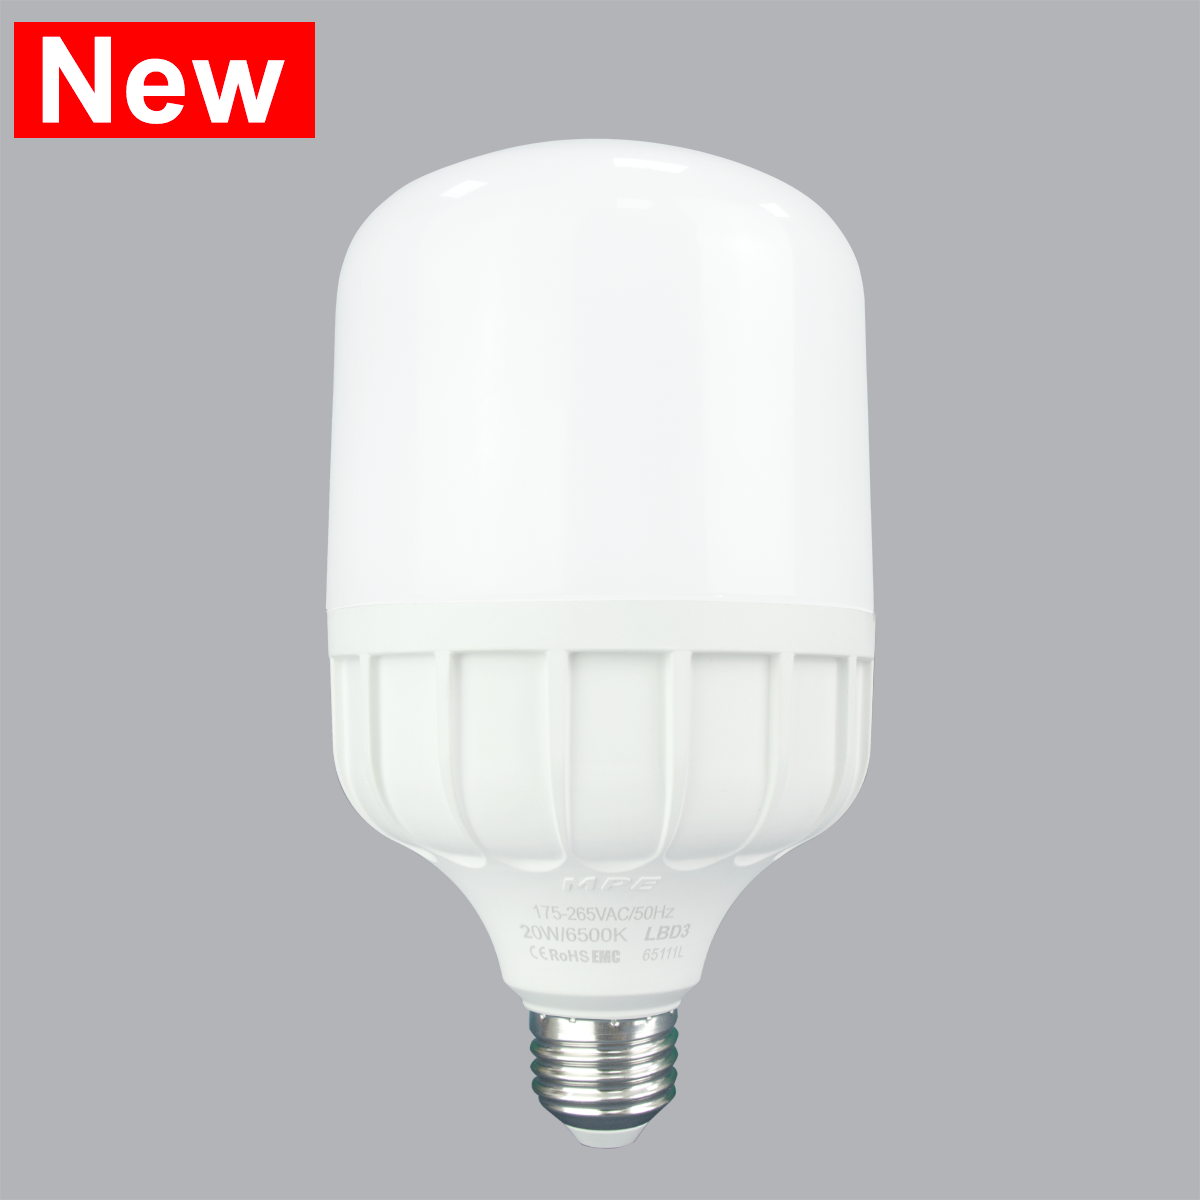 Đèn Led Bulb chống ẩm 20W MPE, LBD3-20T ánh sáng trắng